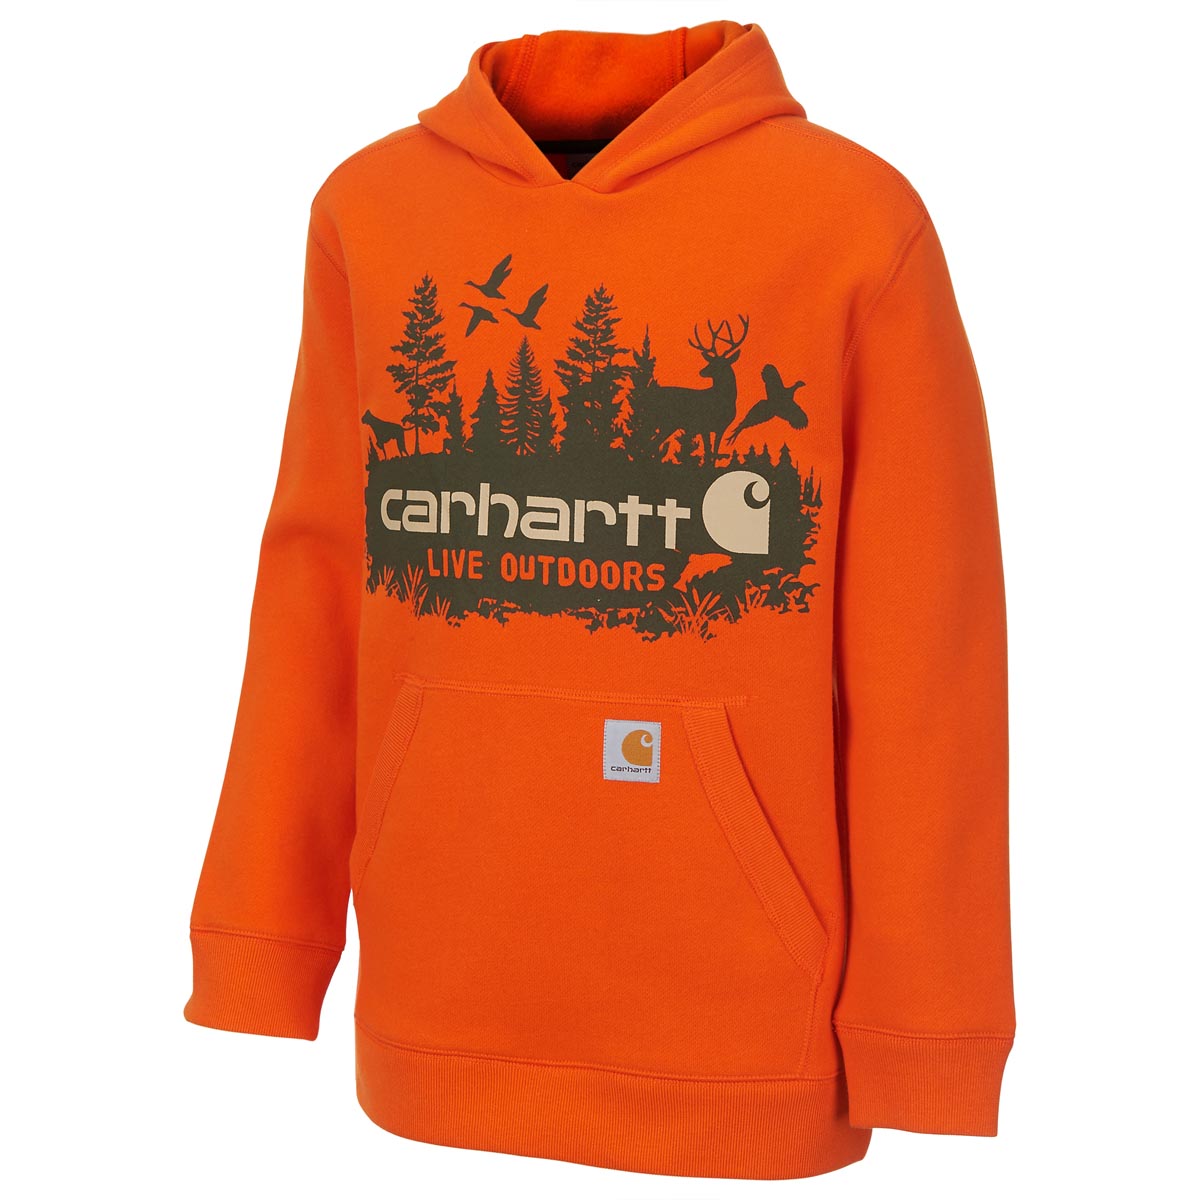 Carhartt Boys' Outdoors Sweatshirt